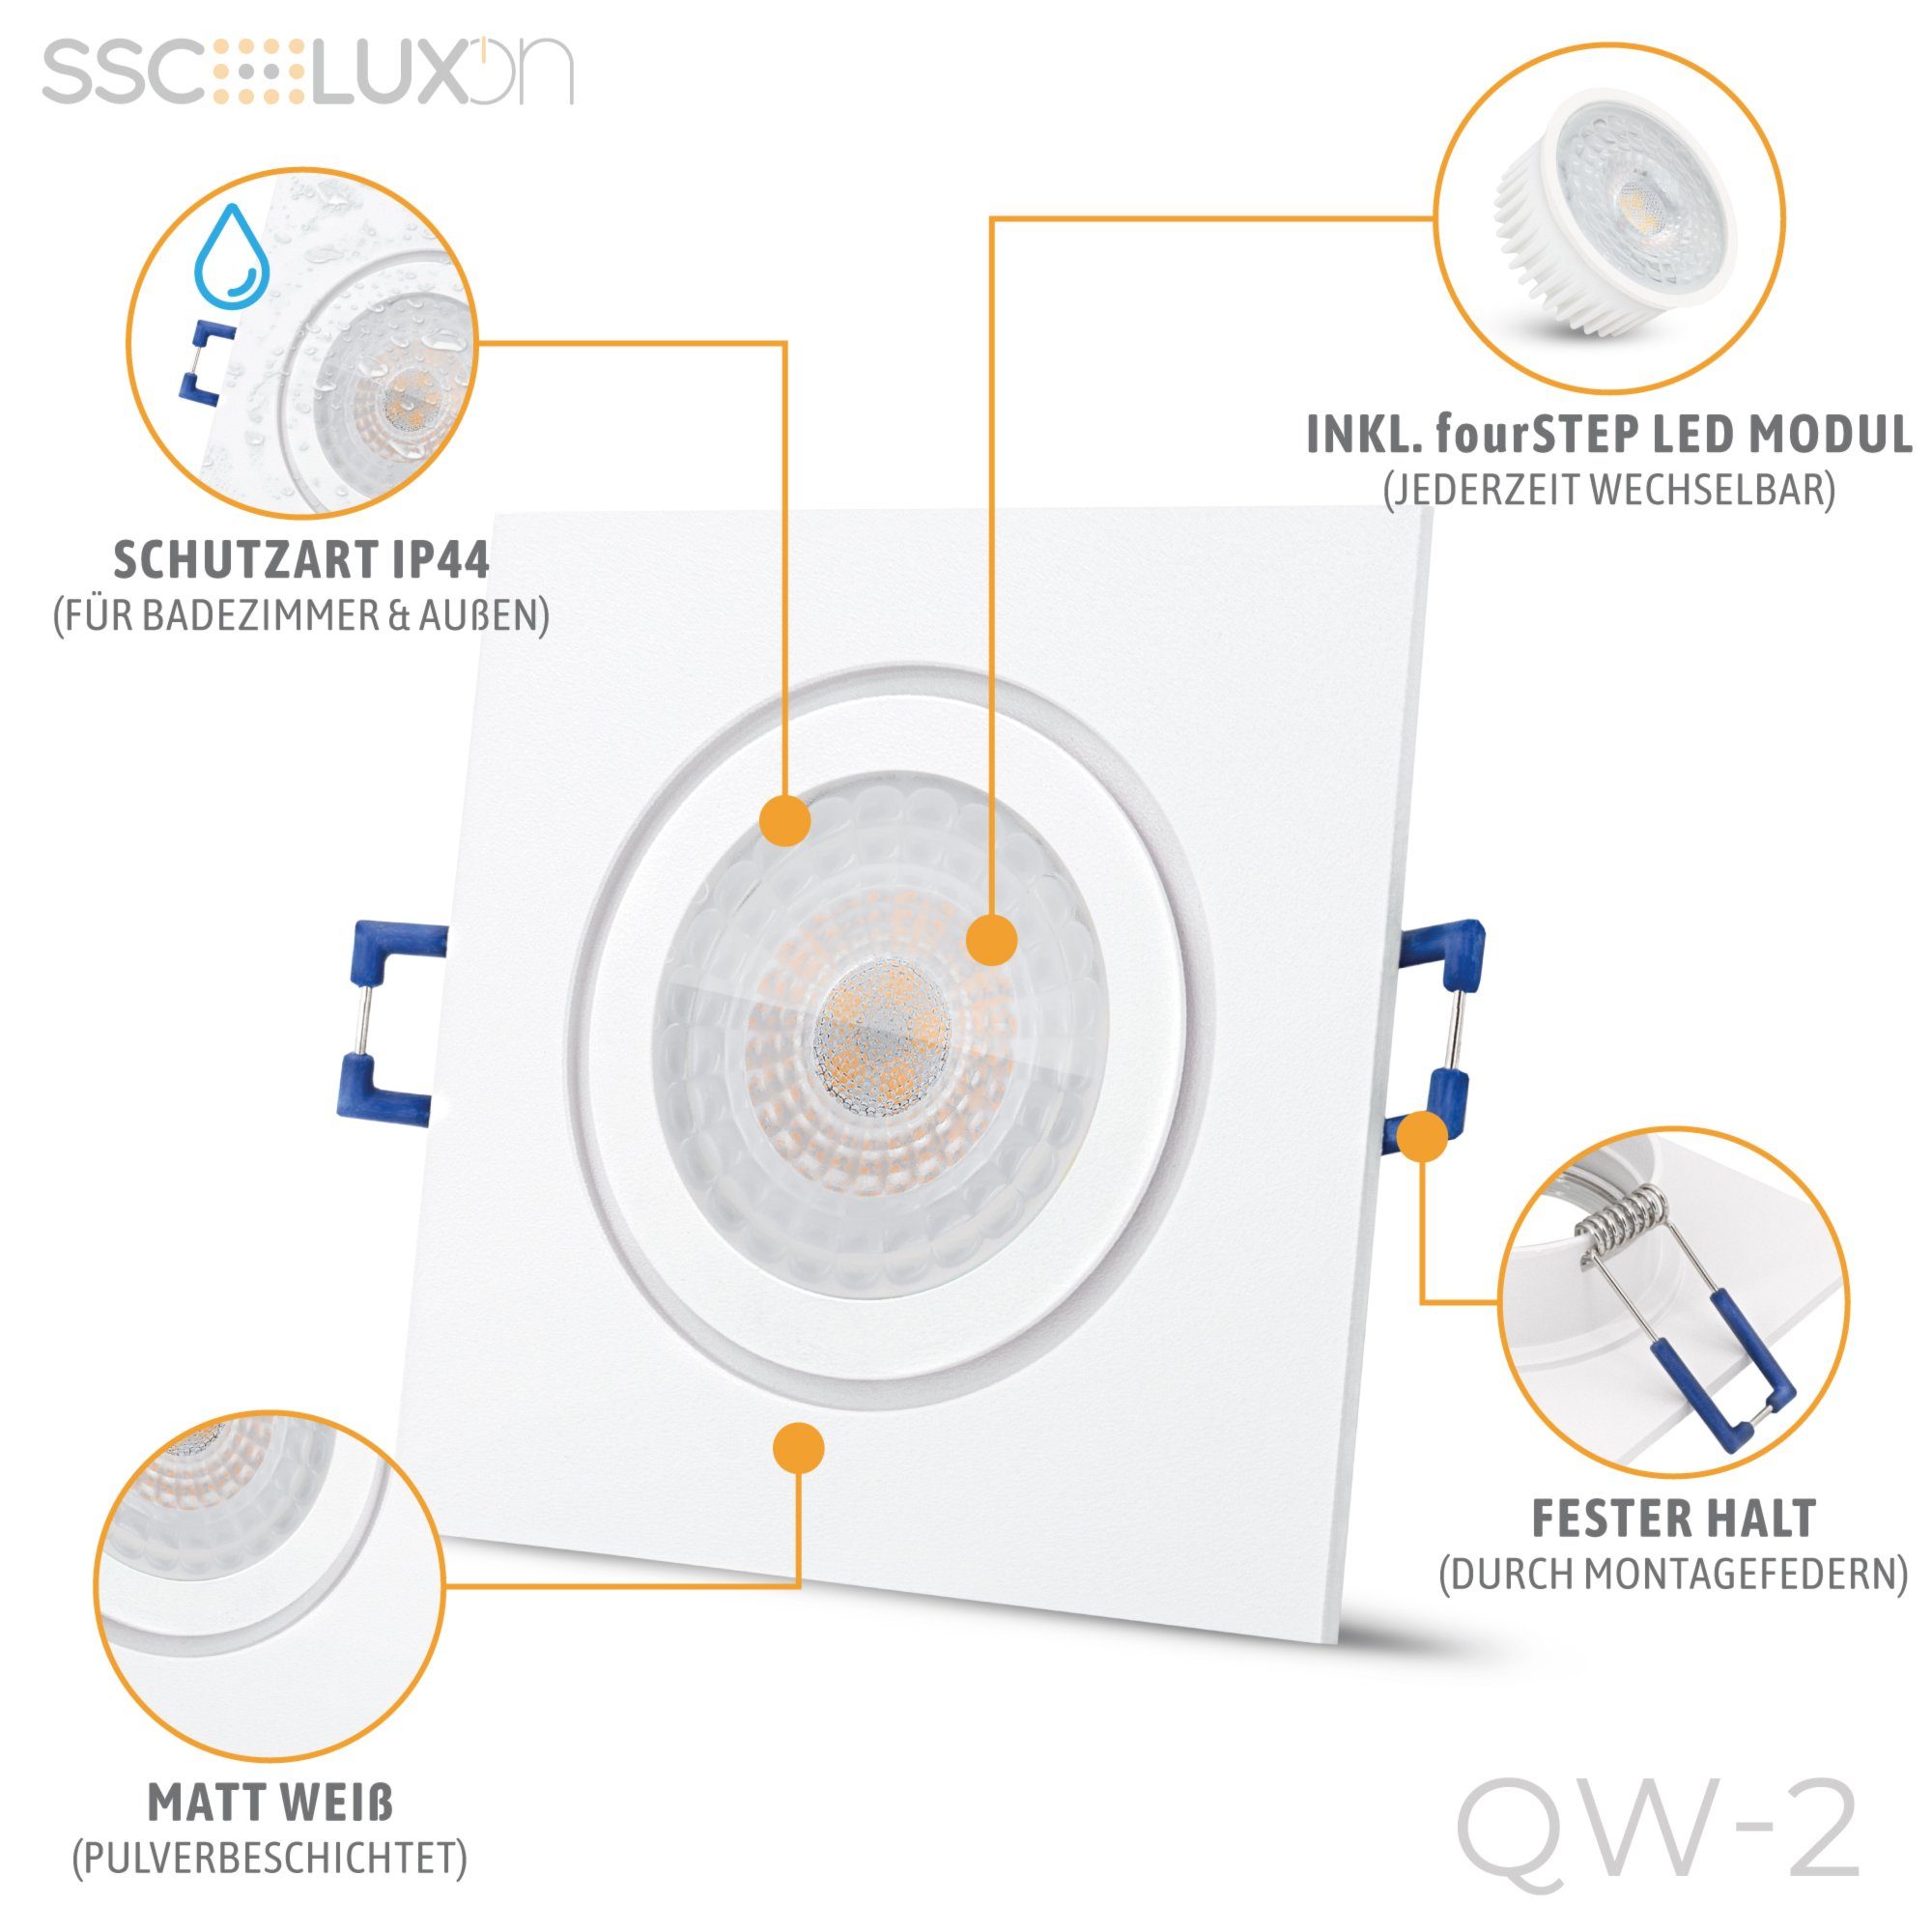 Bad LED SSC-LUXon Außen-Deckenleuchte fourSTEP, QW-2 quadratisch in Einbauspot flach mit Neutralweiß IP44 weiss